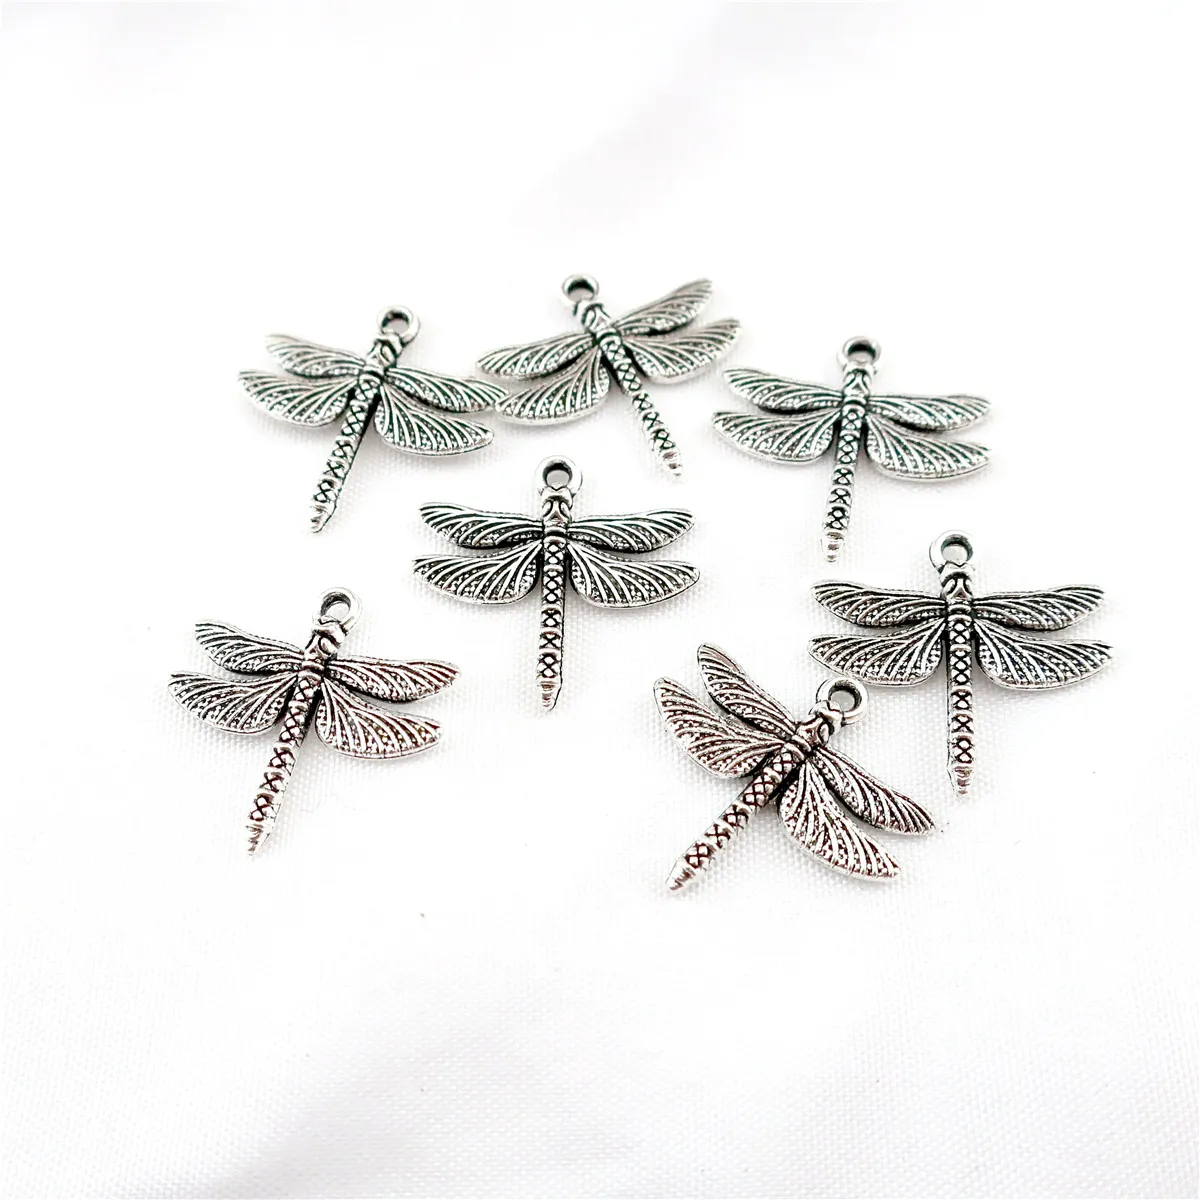 22848 45 pièces en alliage Antique argent Vintage insectes libellule pendentif charme mode bijoux accessoire bricolage Part2453